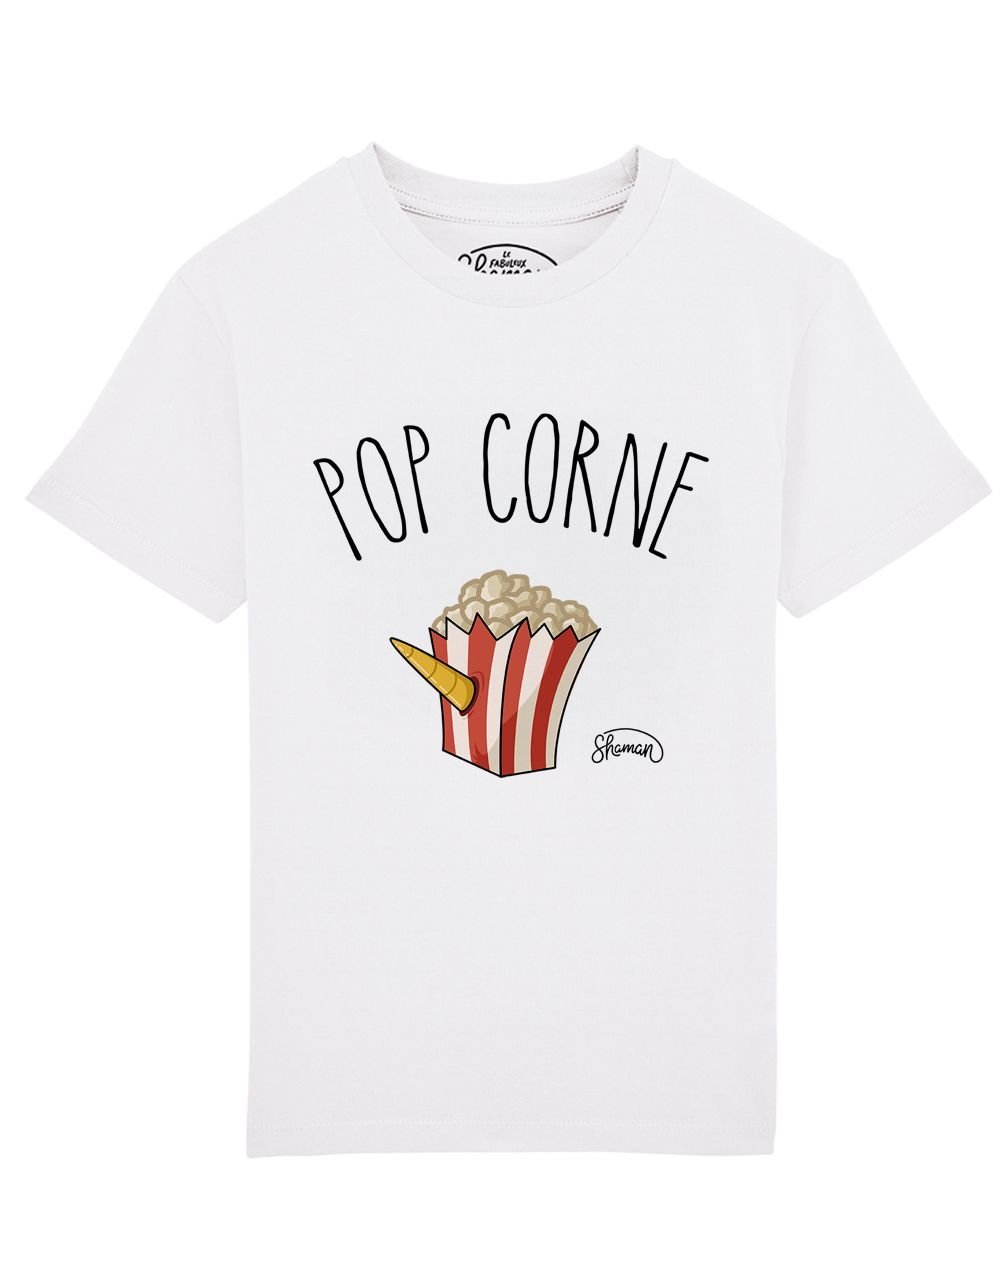 Tee shirt Pop corne